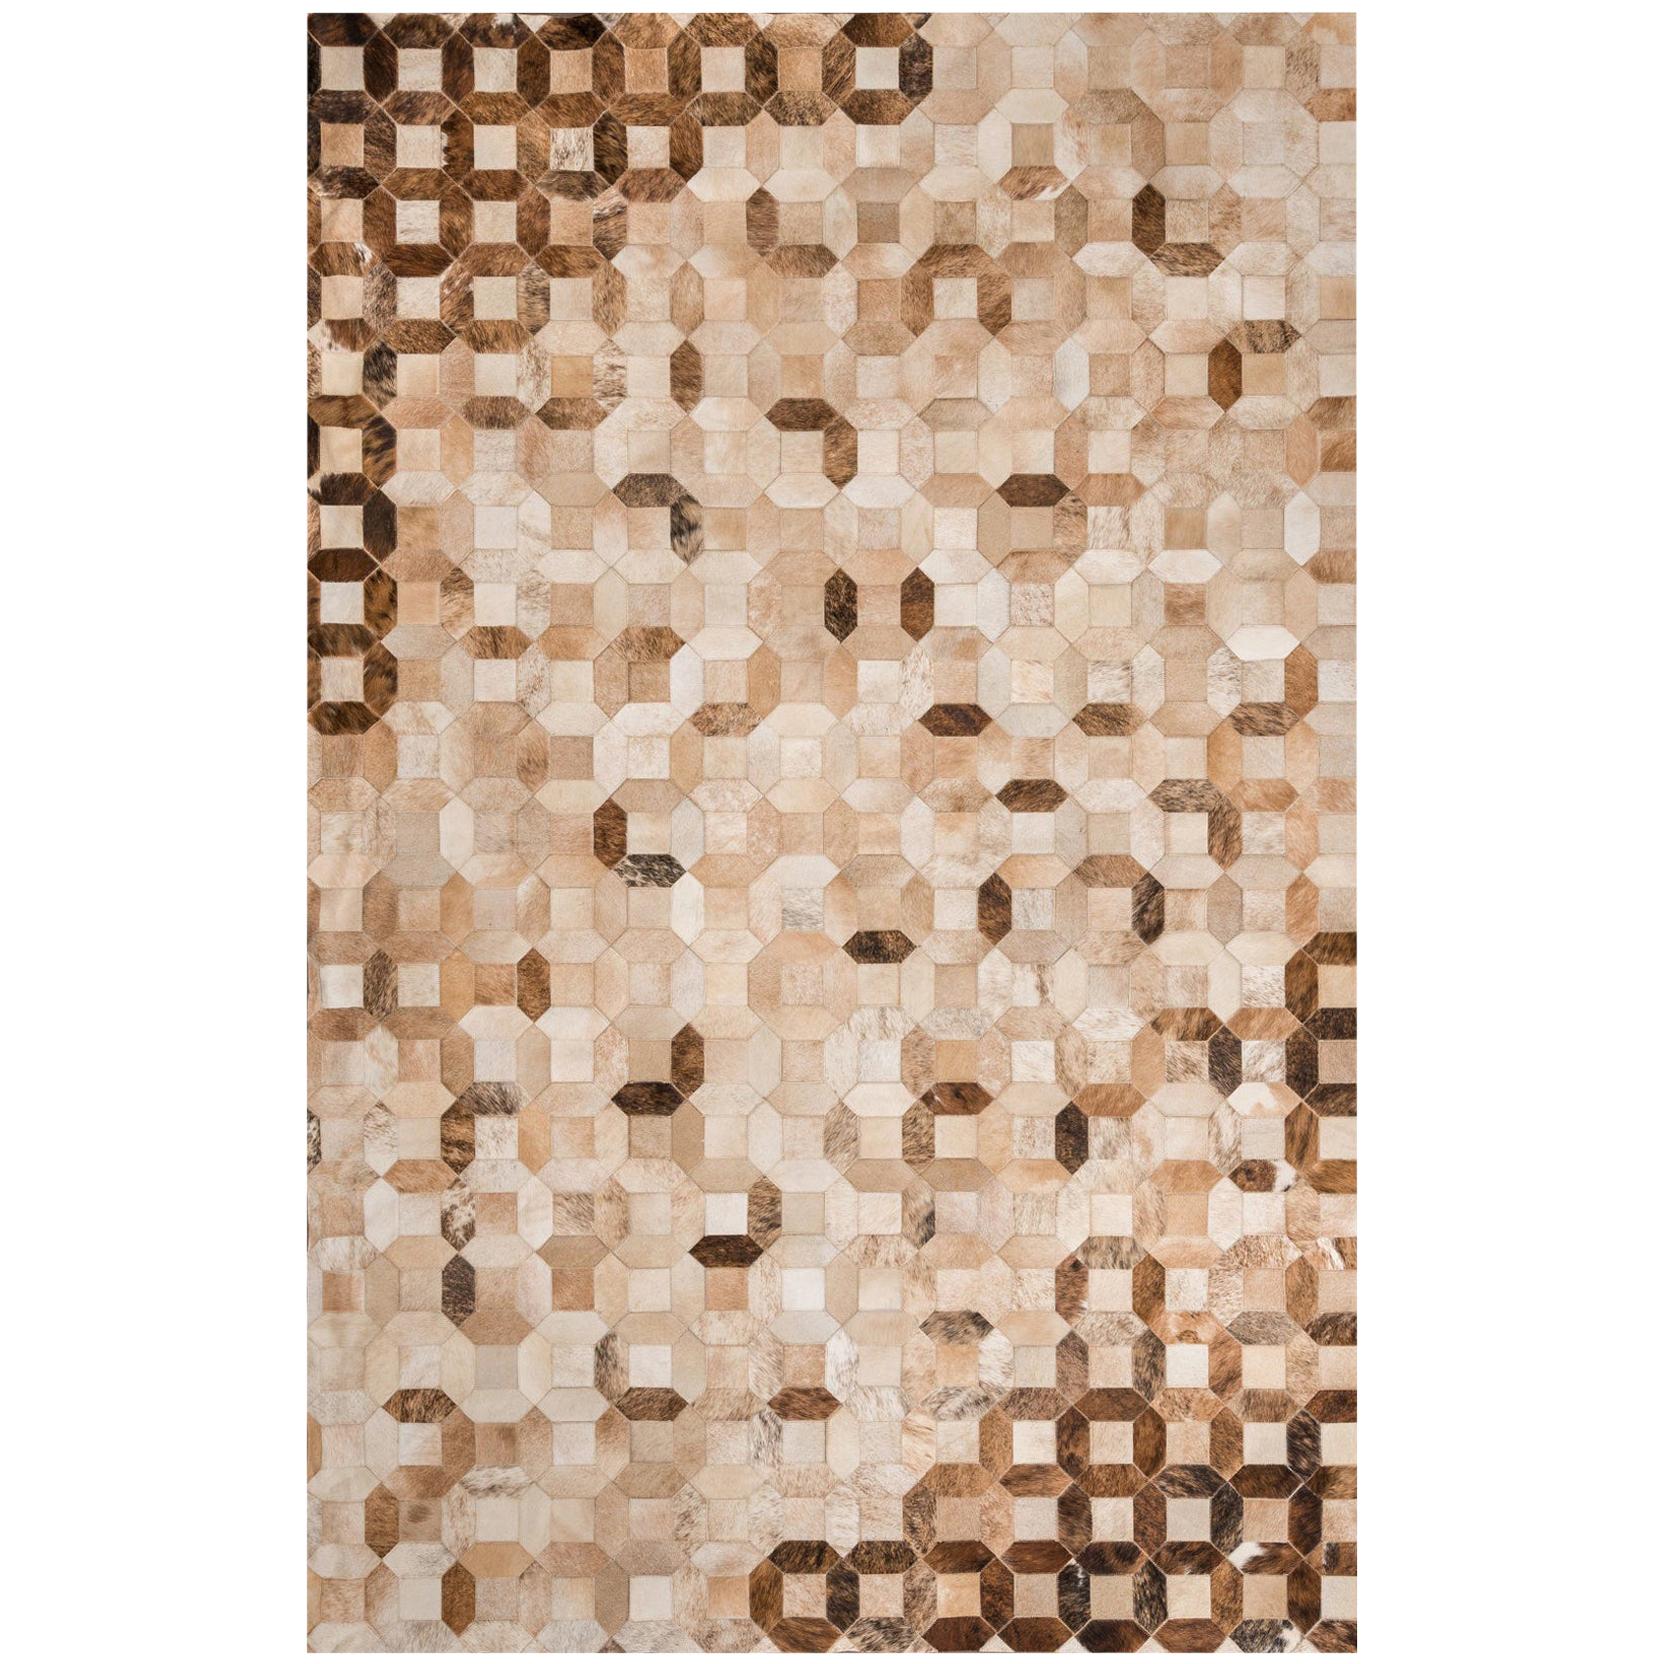 Tan, Caramel Tessellation Trellis Cowhide Area Floor Rug XX-Large